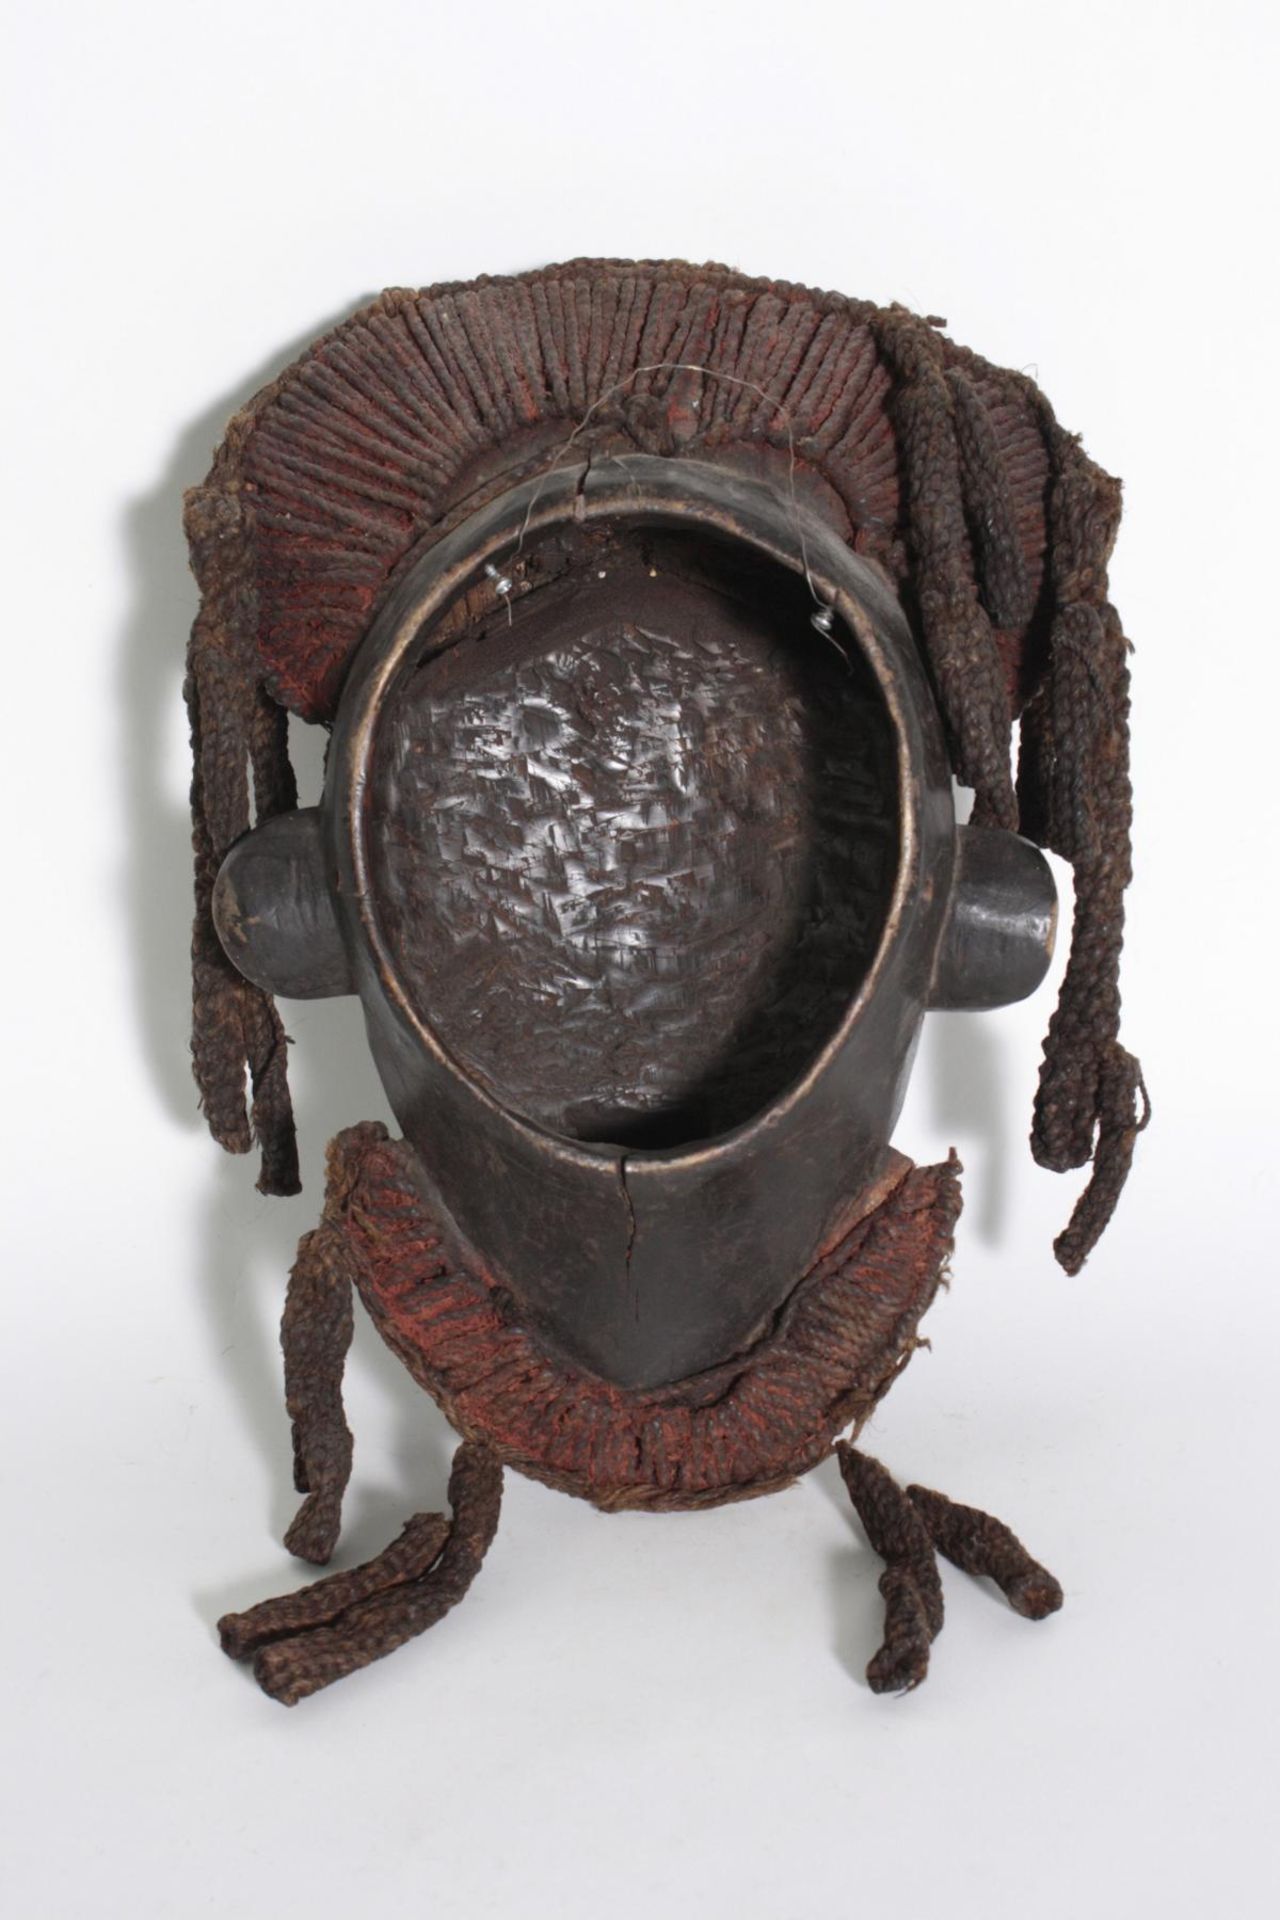 Große Bamileke-Maske, Kamerun, Grassland, 1. Hälfte 20. Jh.Holz, geschnitzt, freundlicher - Bild 2 aus 4